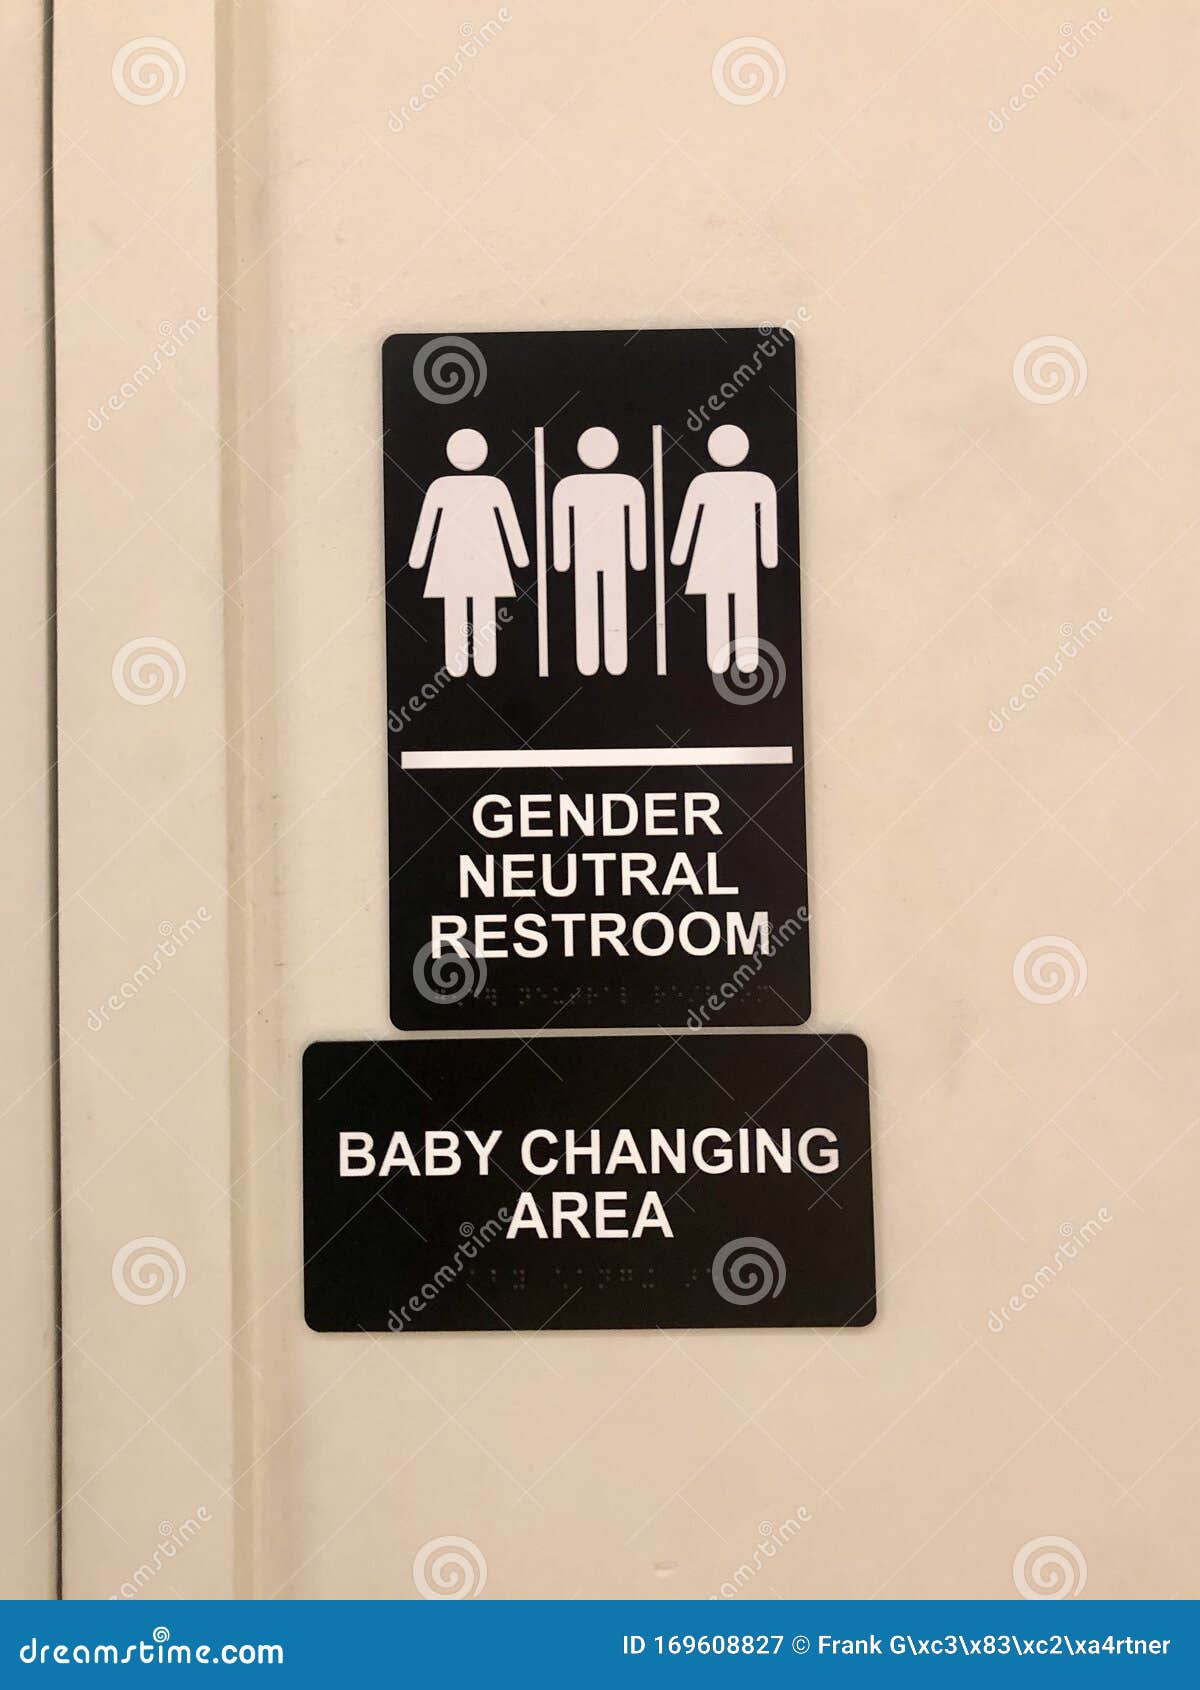 gender neutral restroom sign